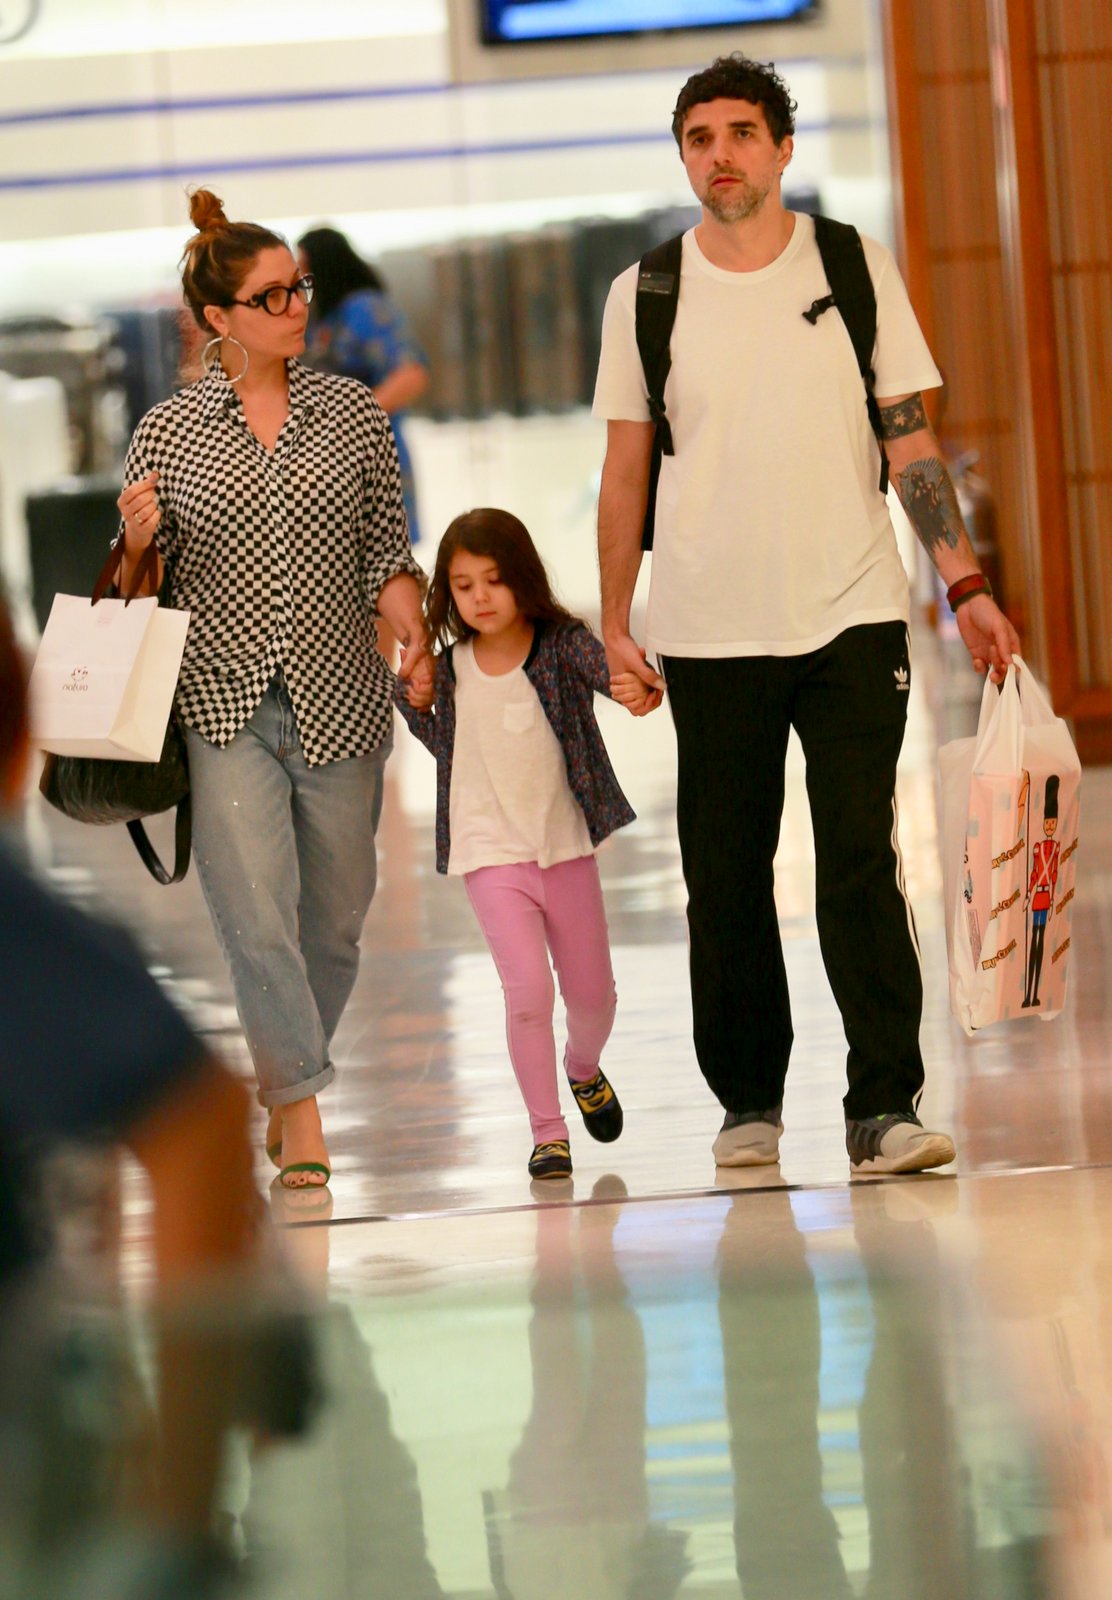 Maria Rita passeando com a família por shopping